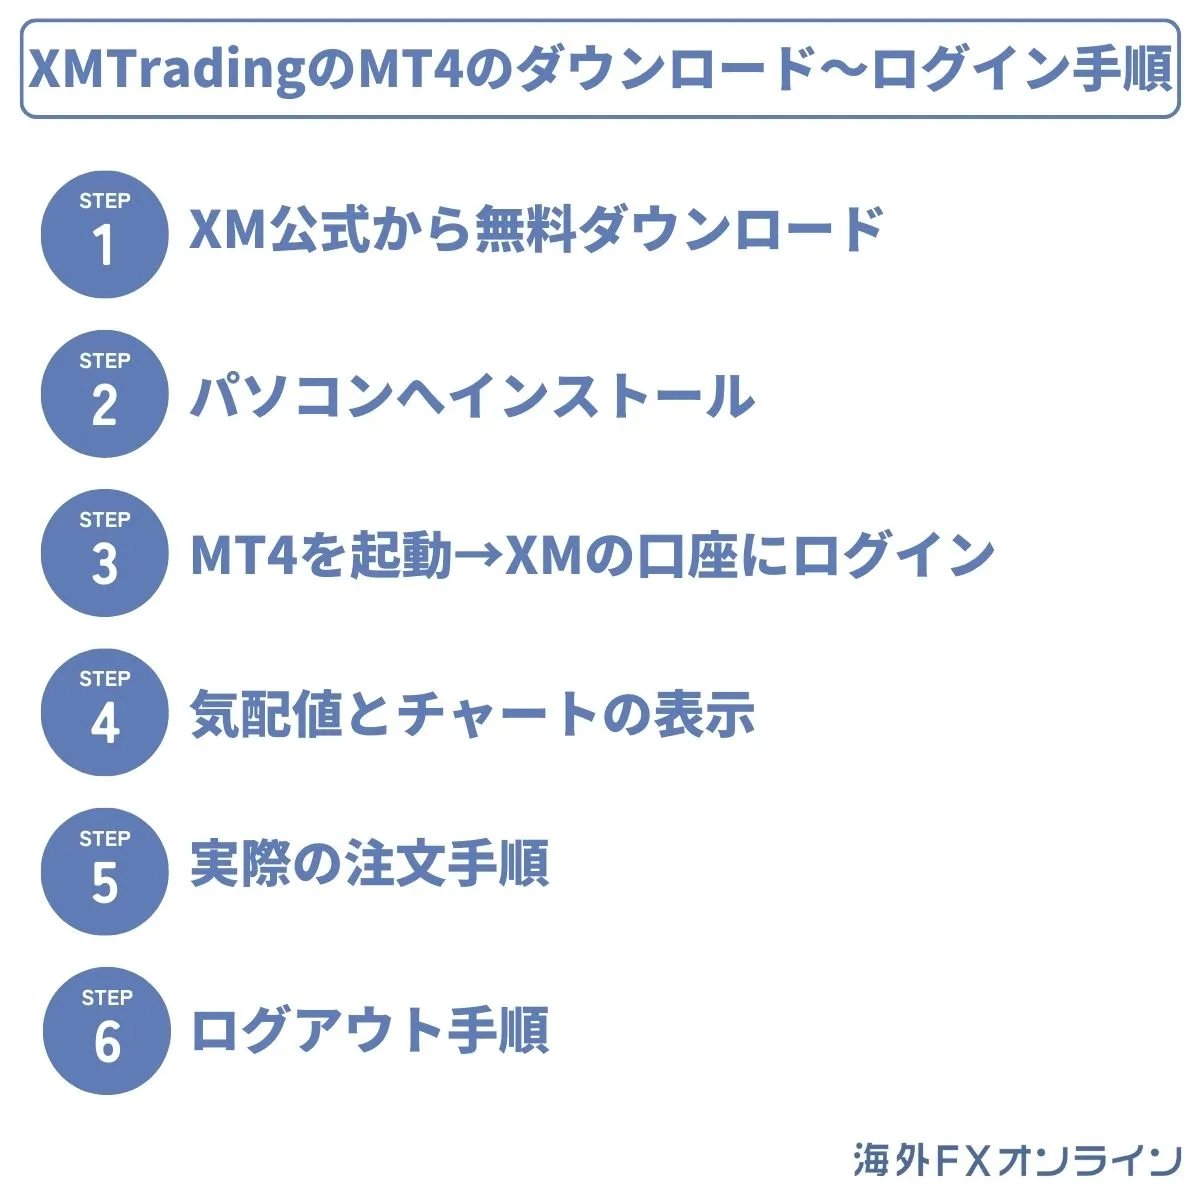 【パソコン版】XMTradingのMT4のダウンロード〜ログイン手順